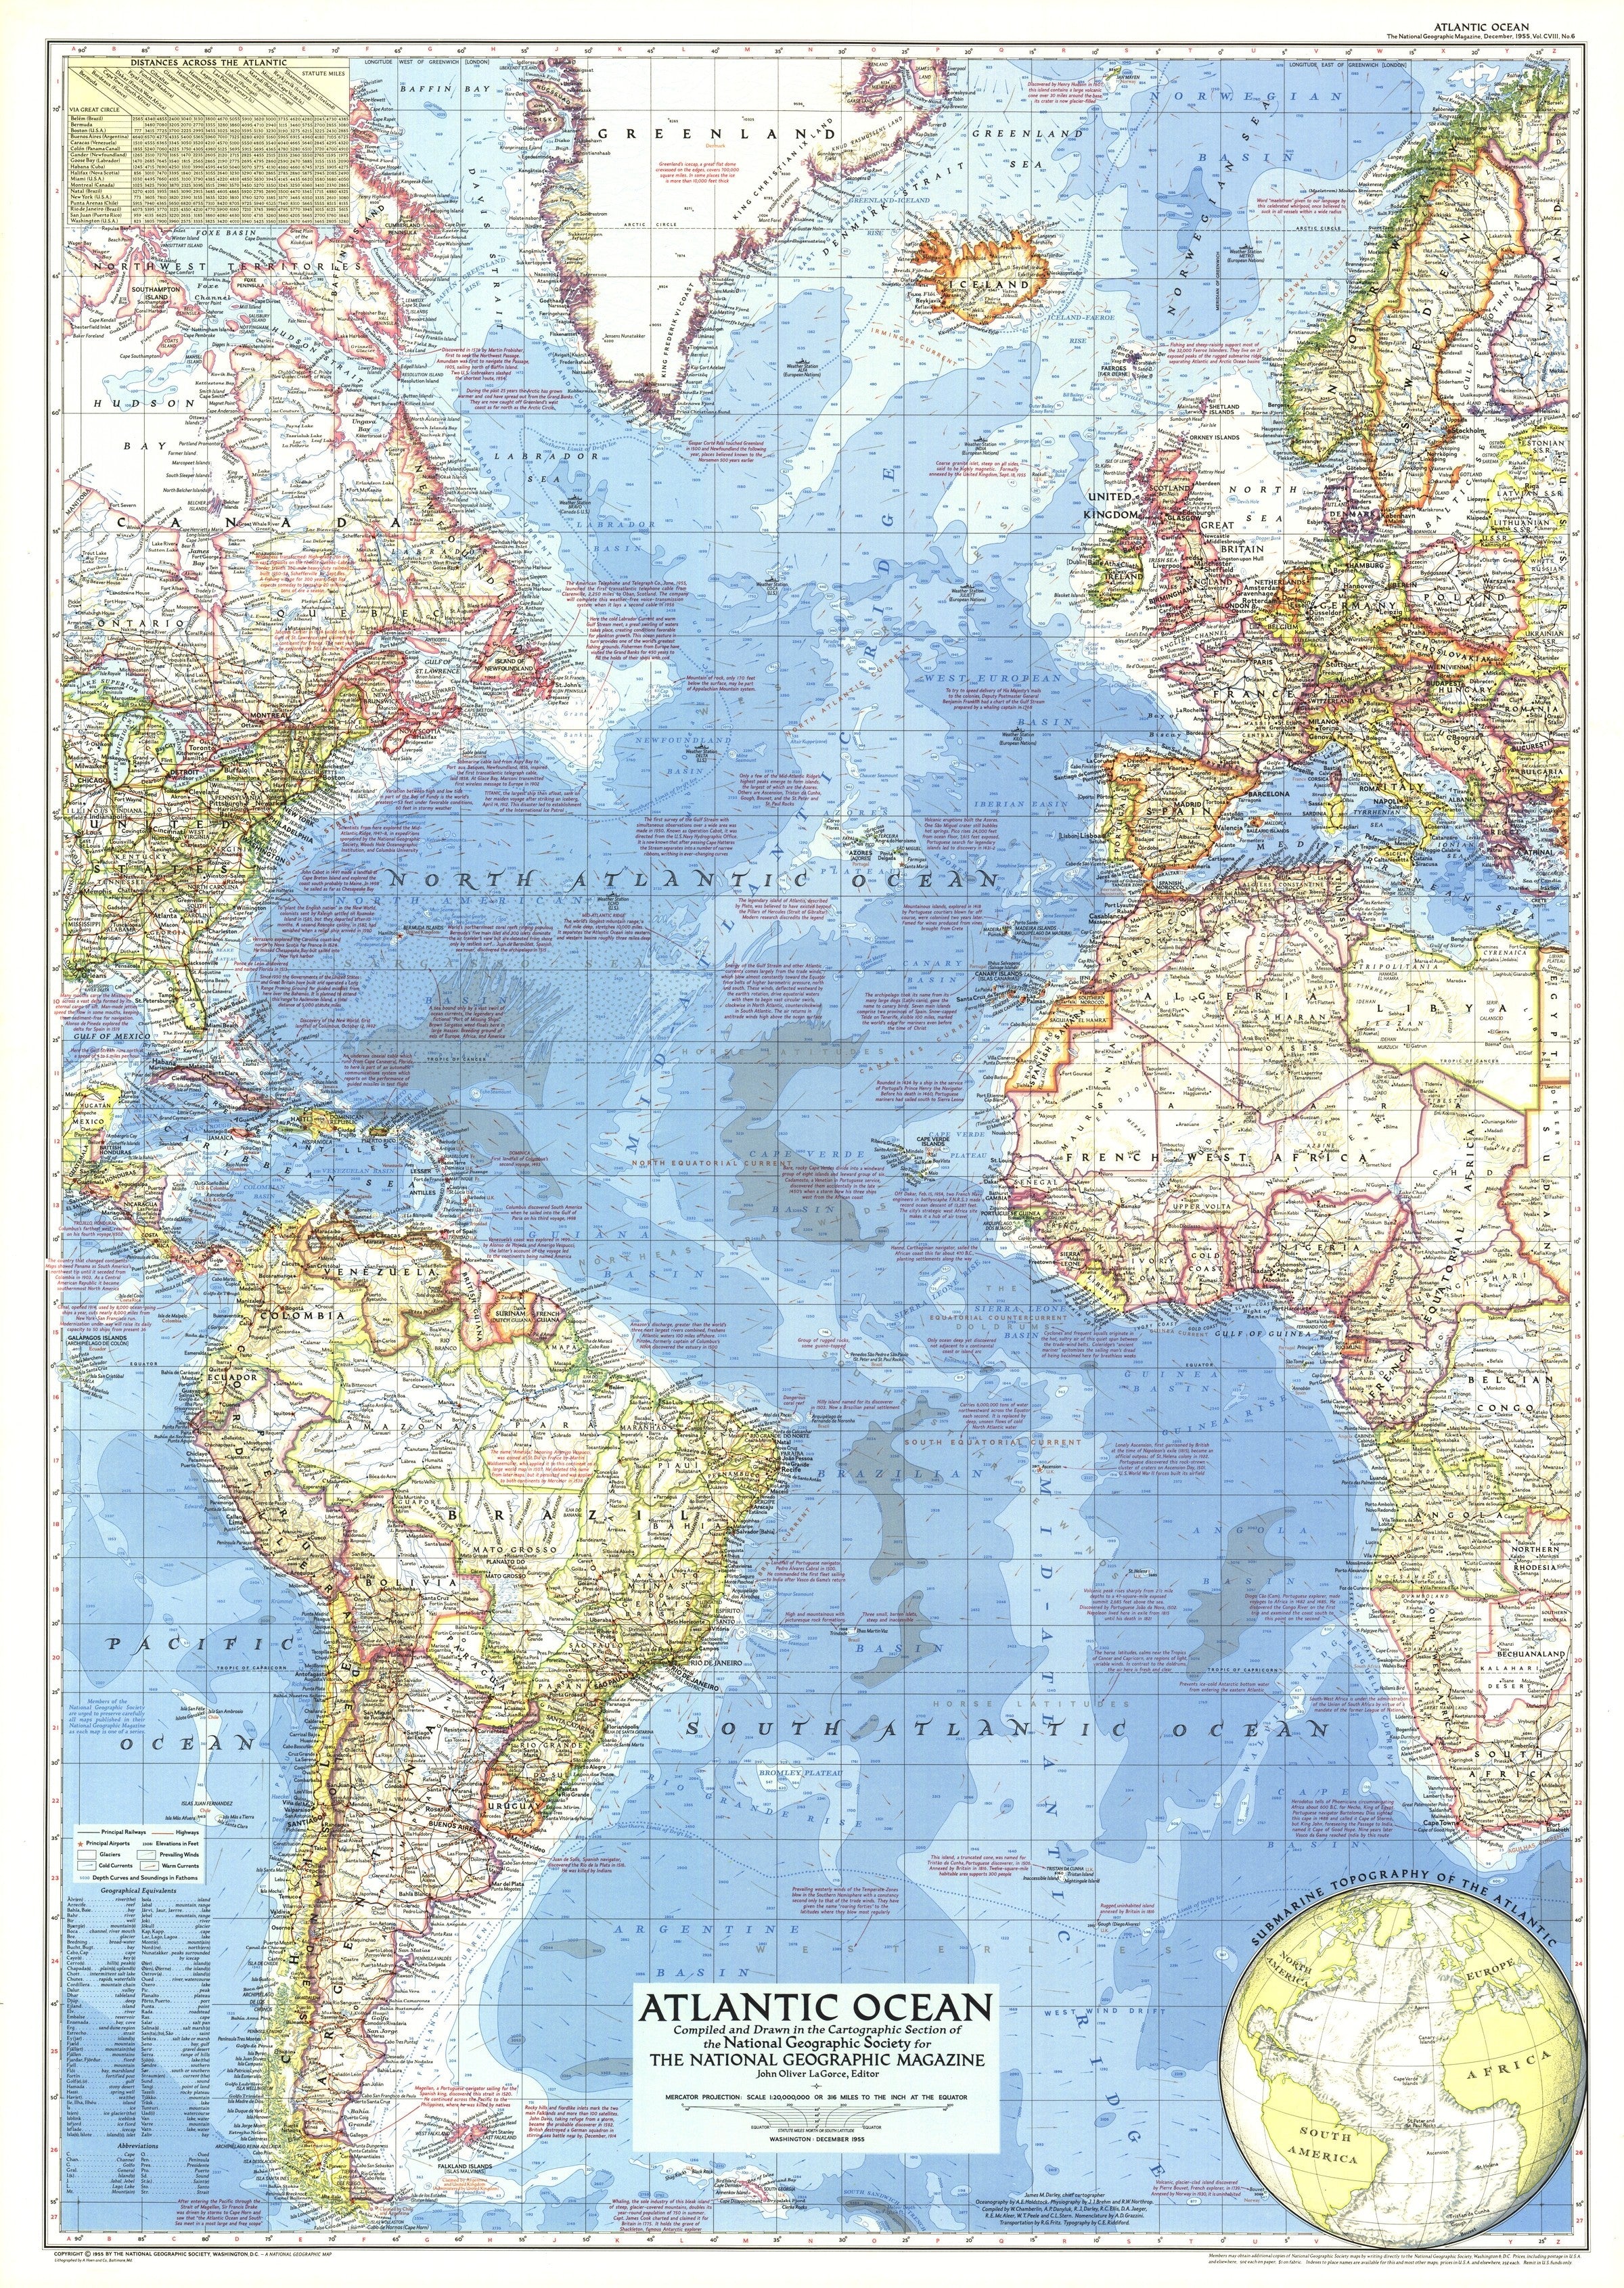 Atlantic Ocean On Us Map 